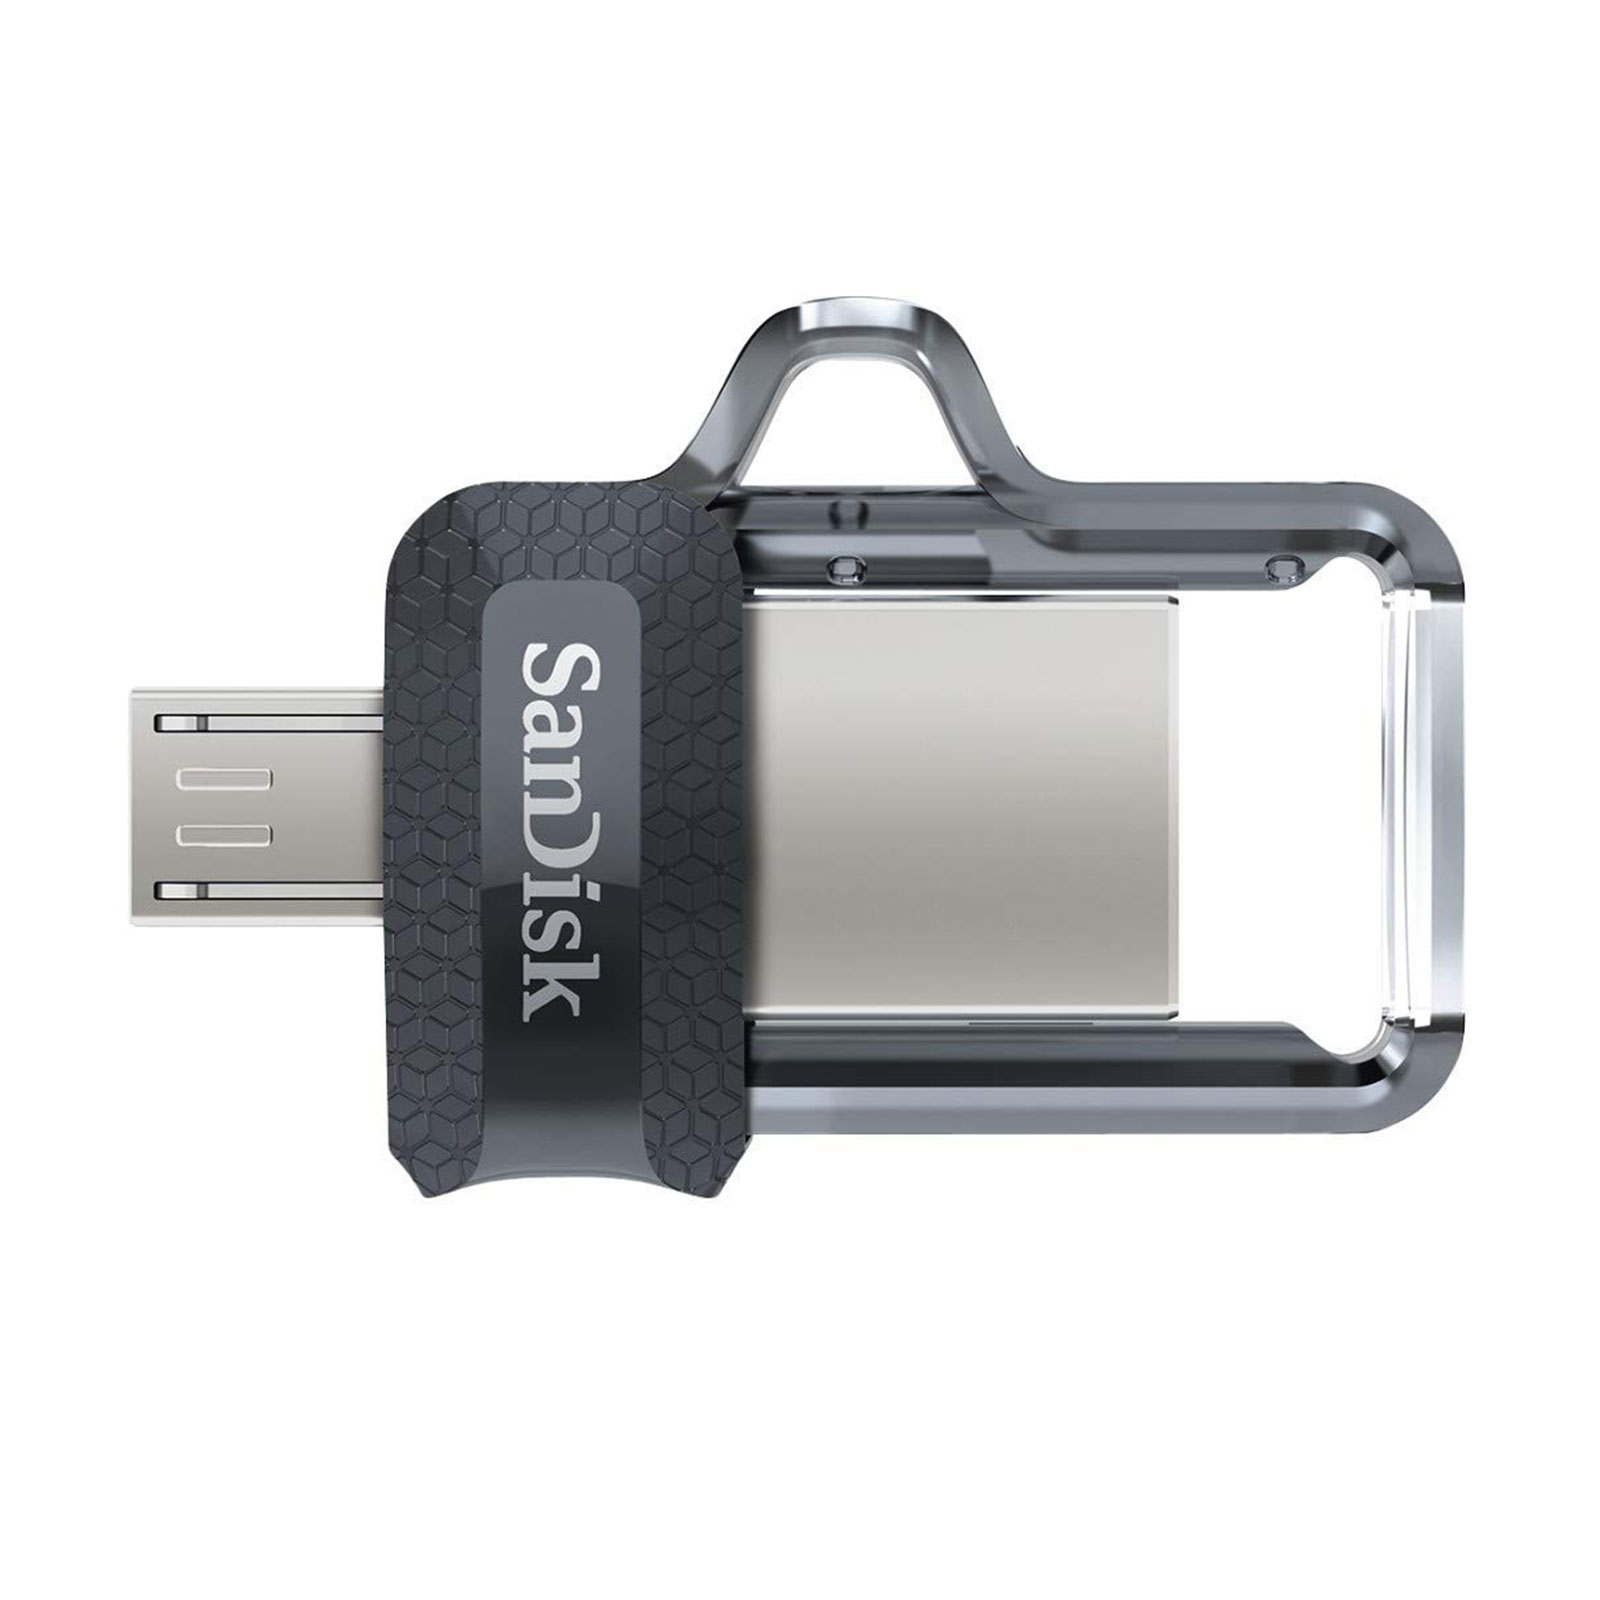 SanDisk Ultra Dual USB Drive 3.0 128GB